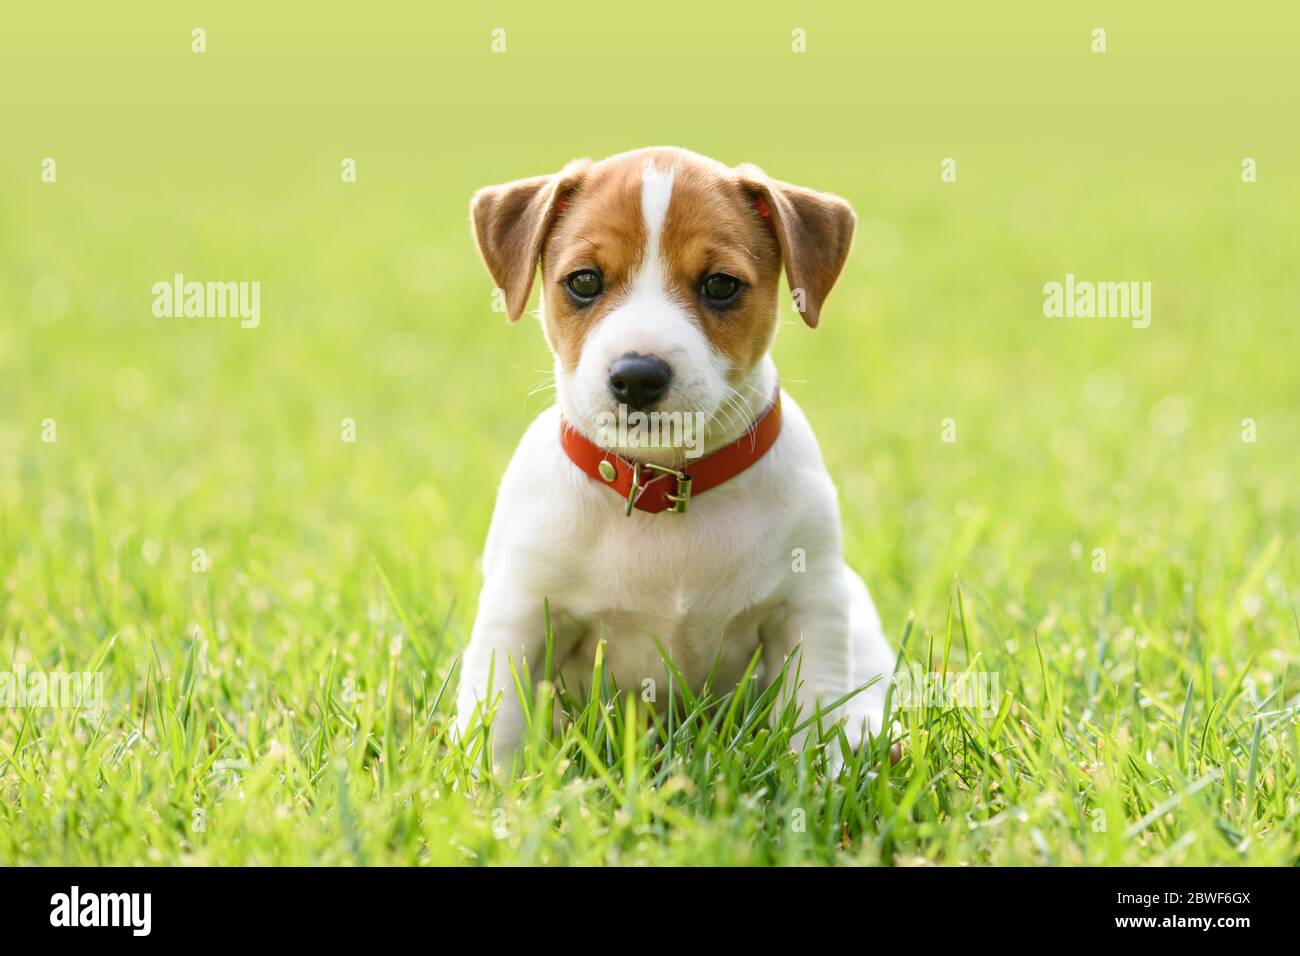 Ein kleiner weißer Hund Welpe Rasse Jack Russel Terrier mit schönen Augen auf grünem Rasen. Hunde und Tierfotografie Stockfoto